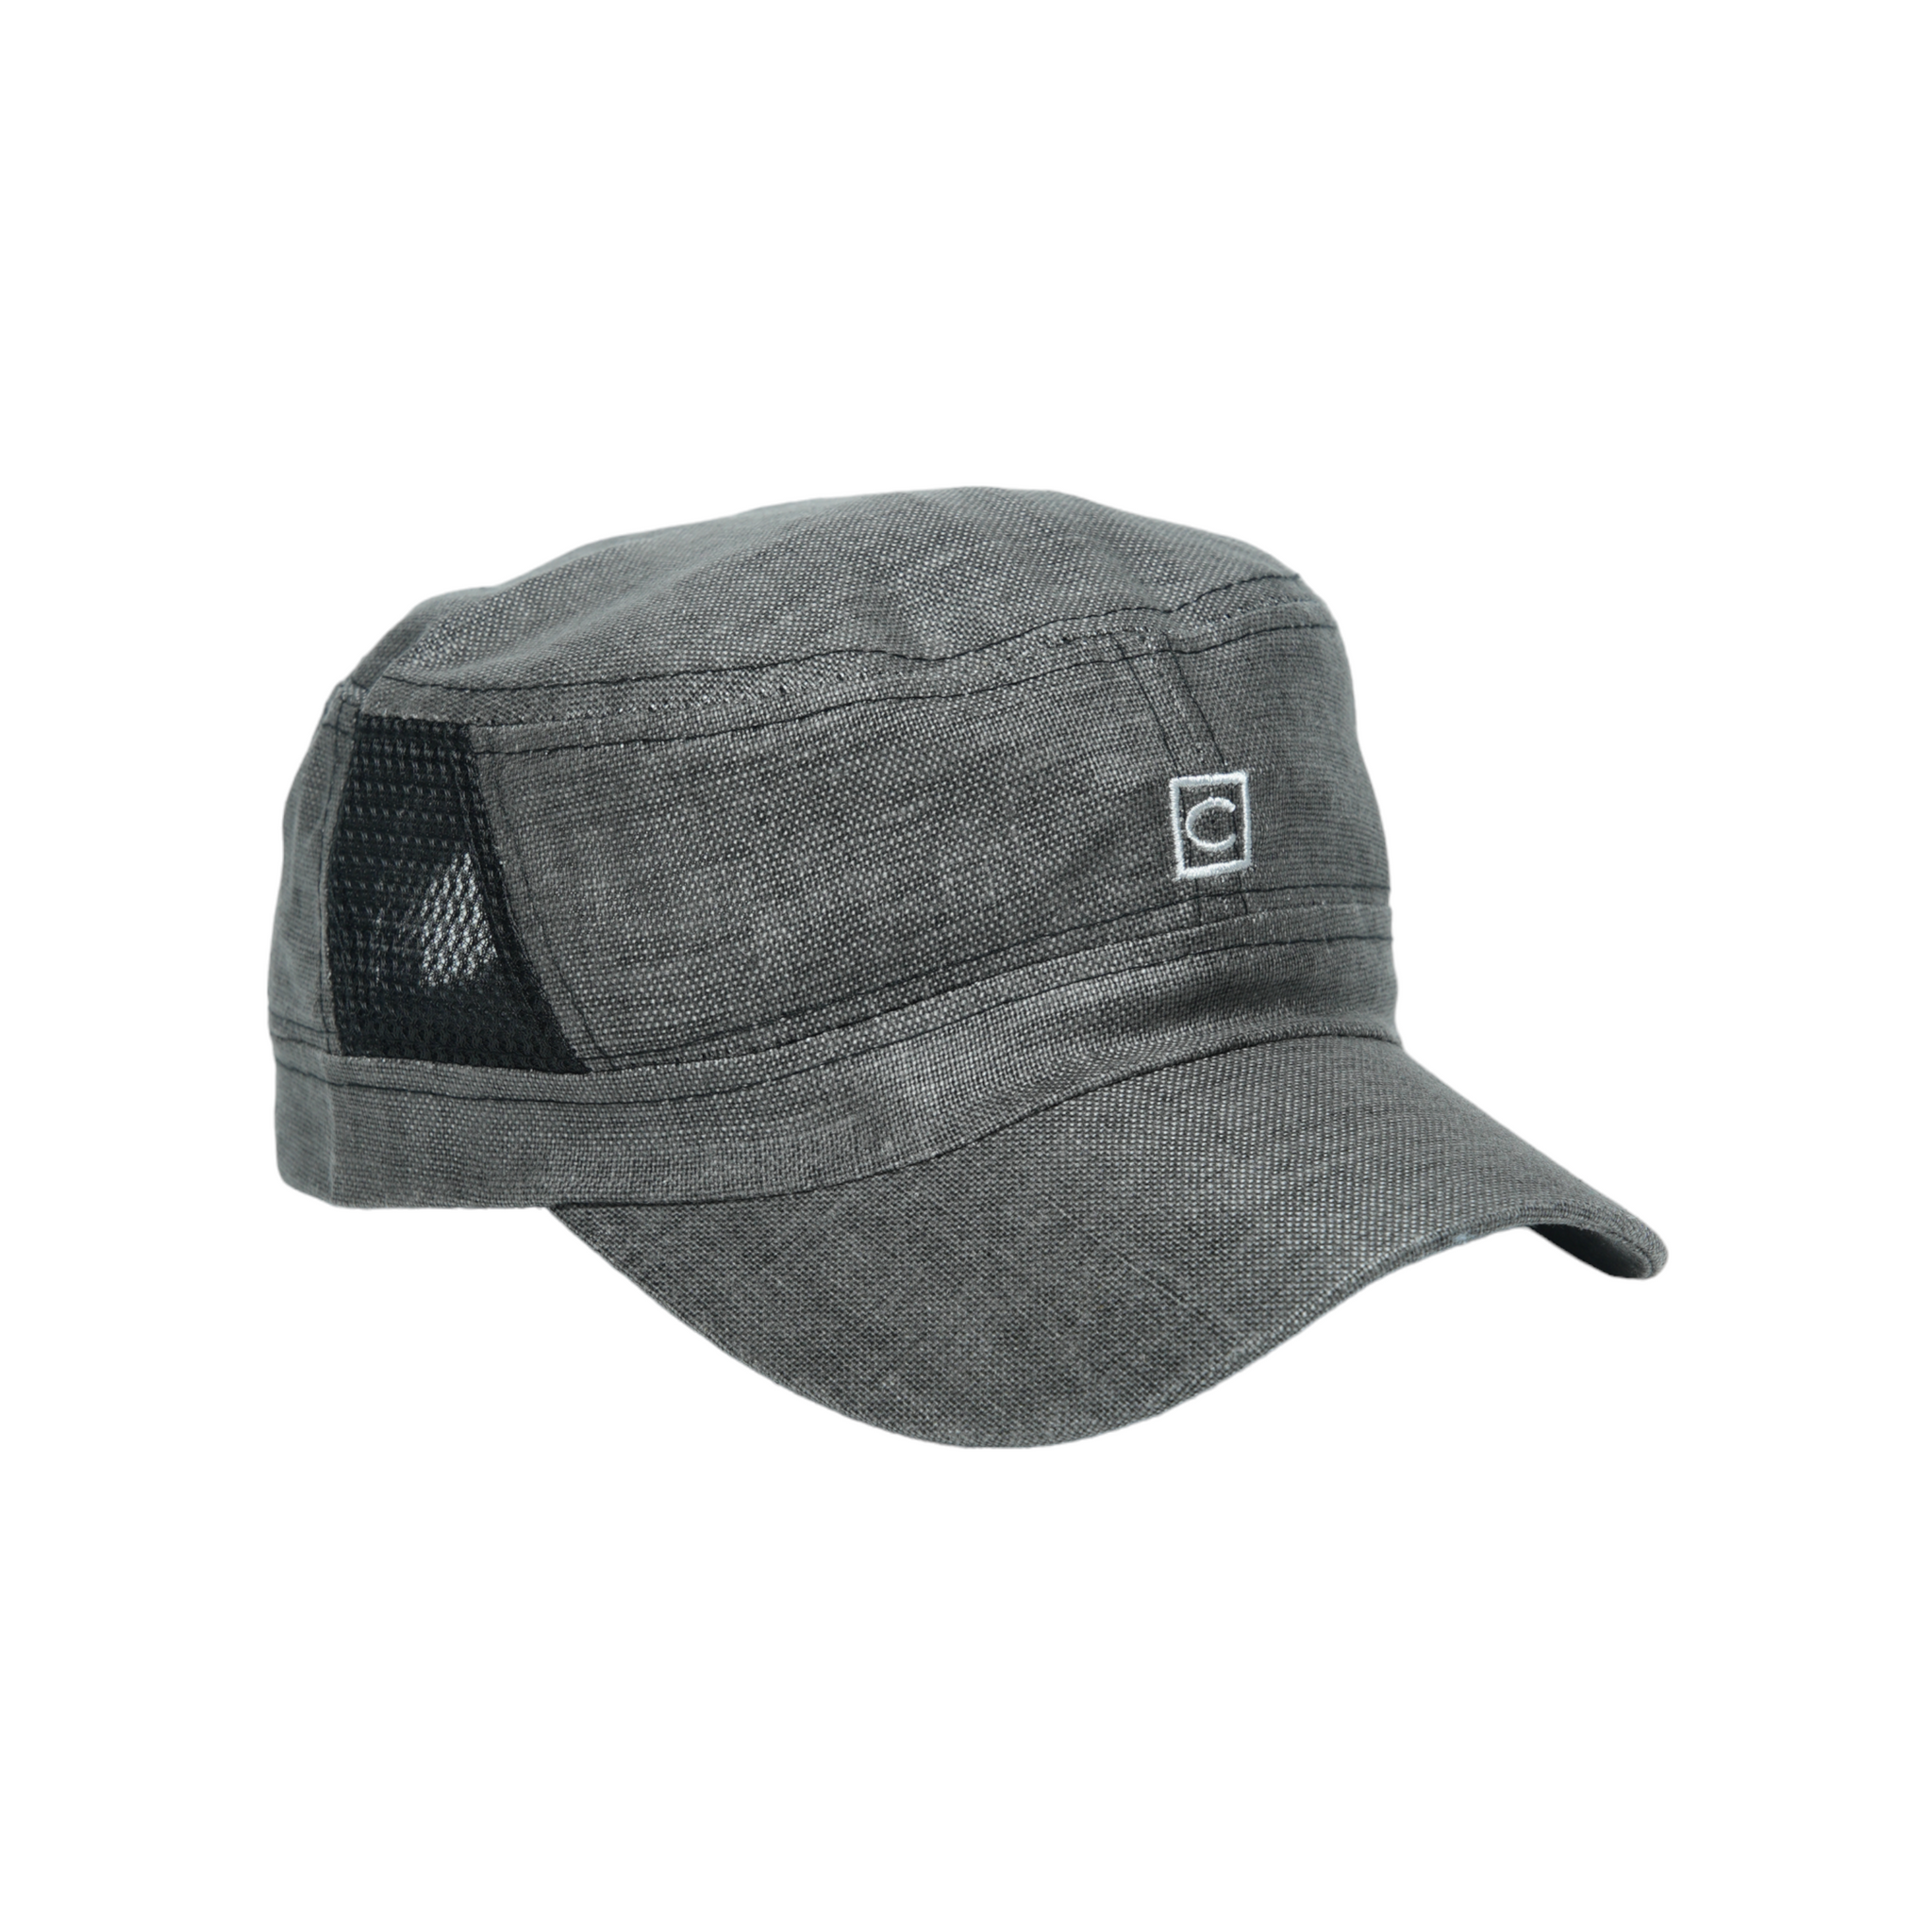 Chokore Linen Mesh Flat Top Cap (Gray & Black)